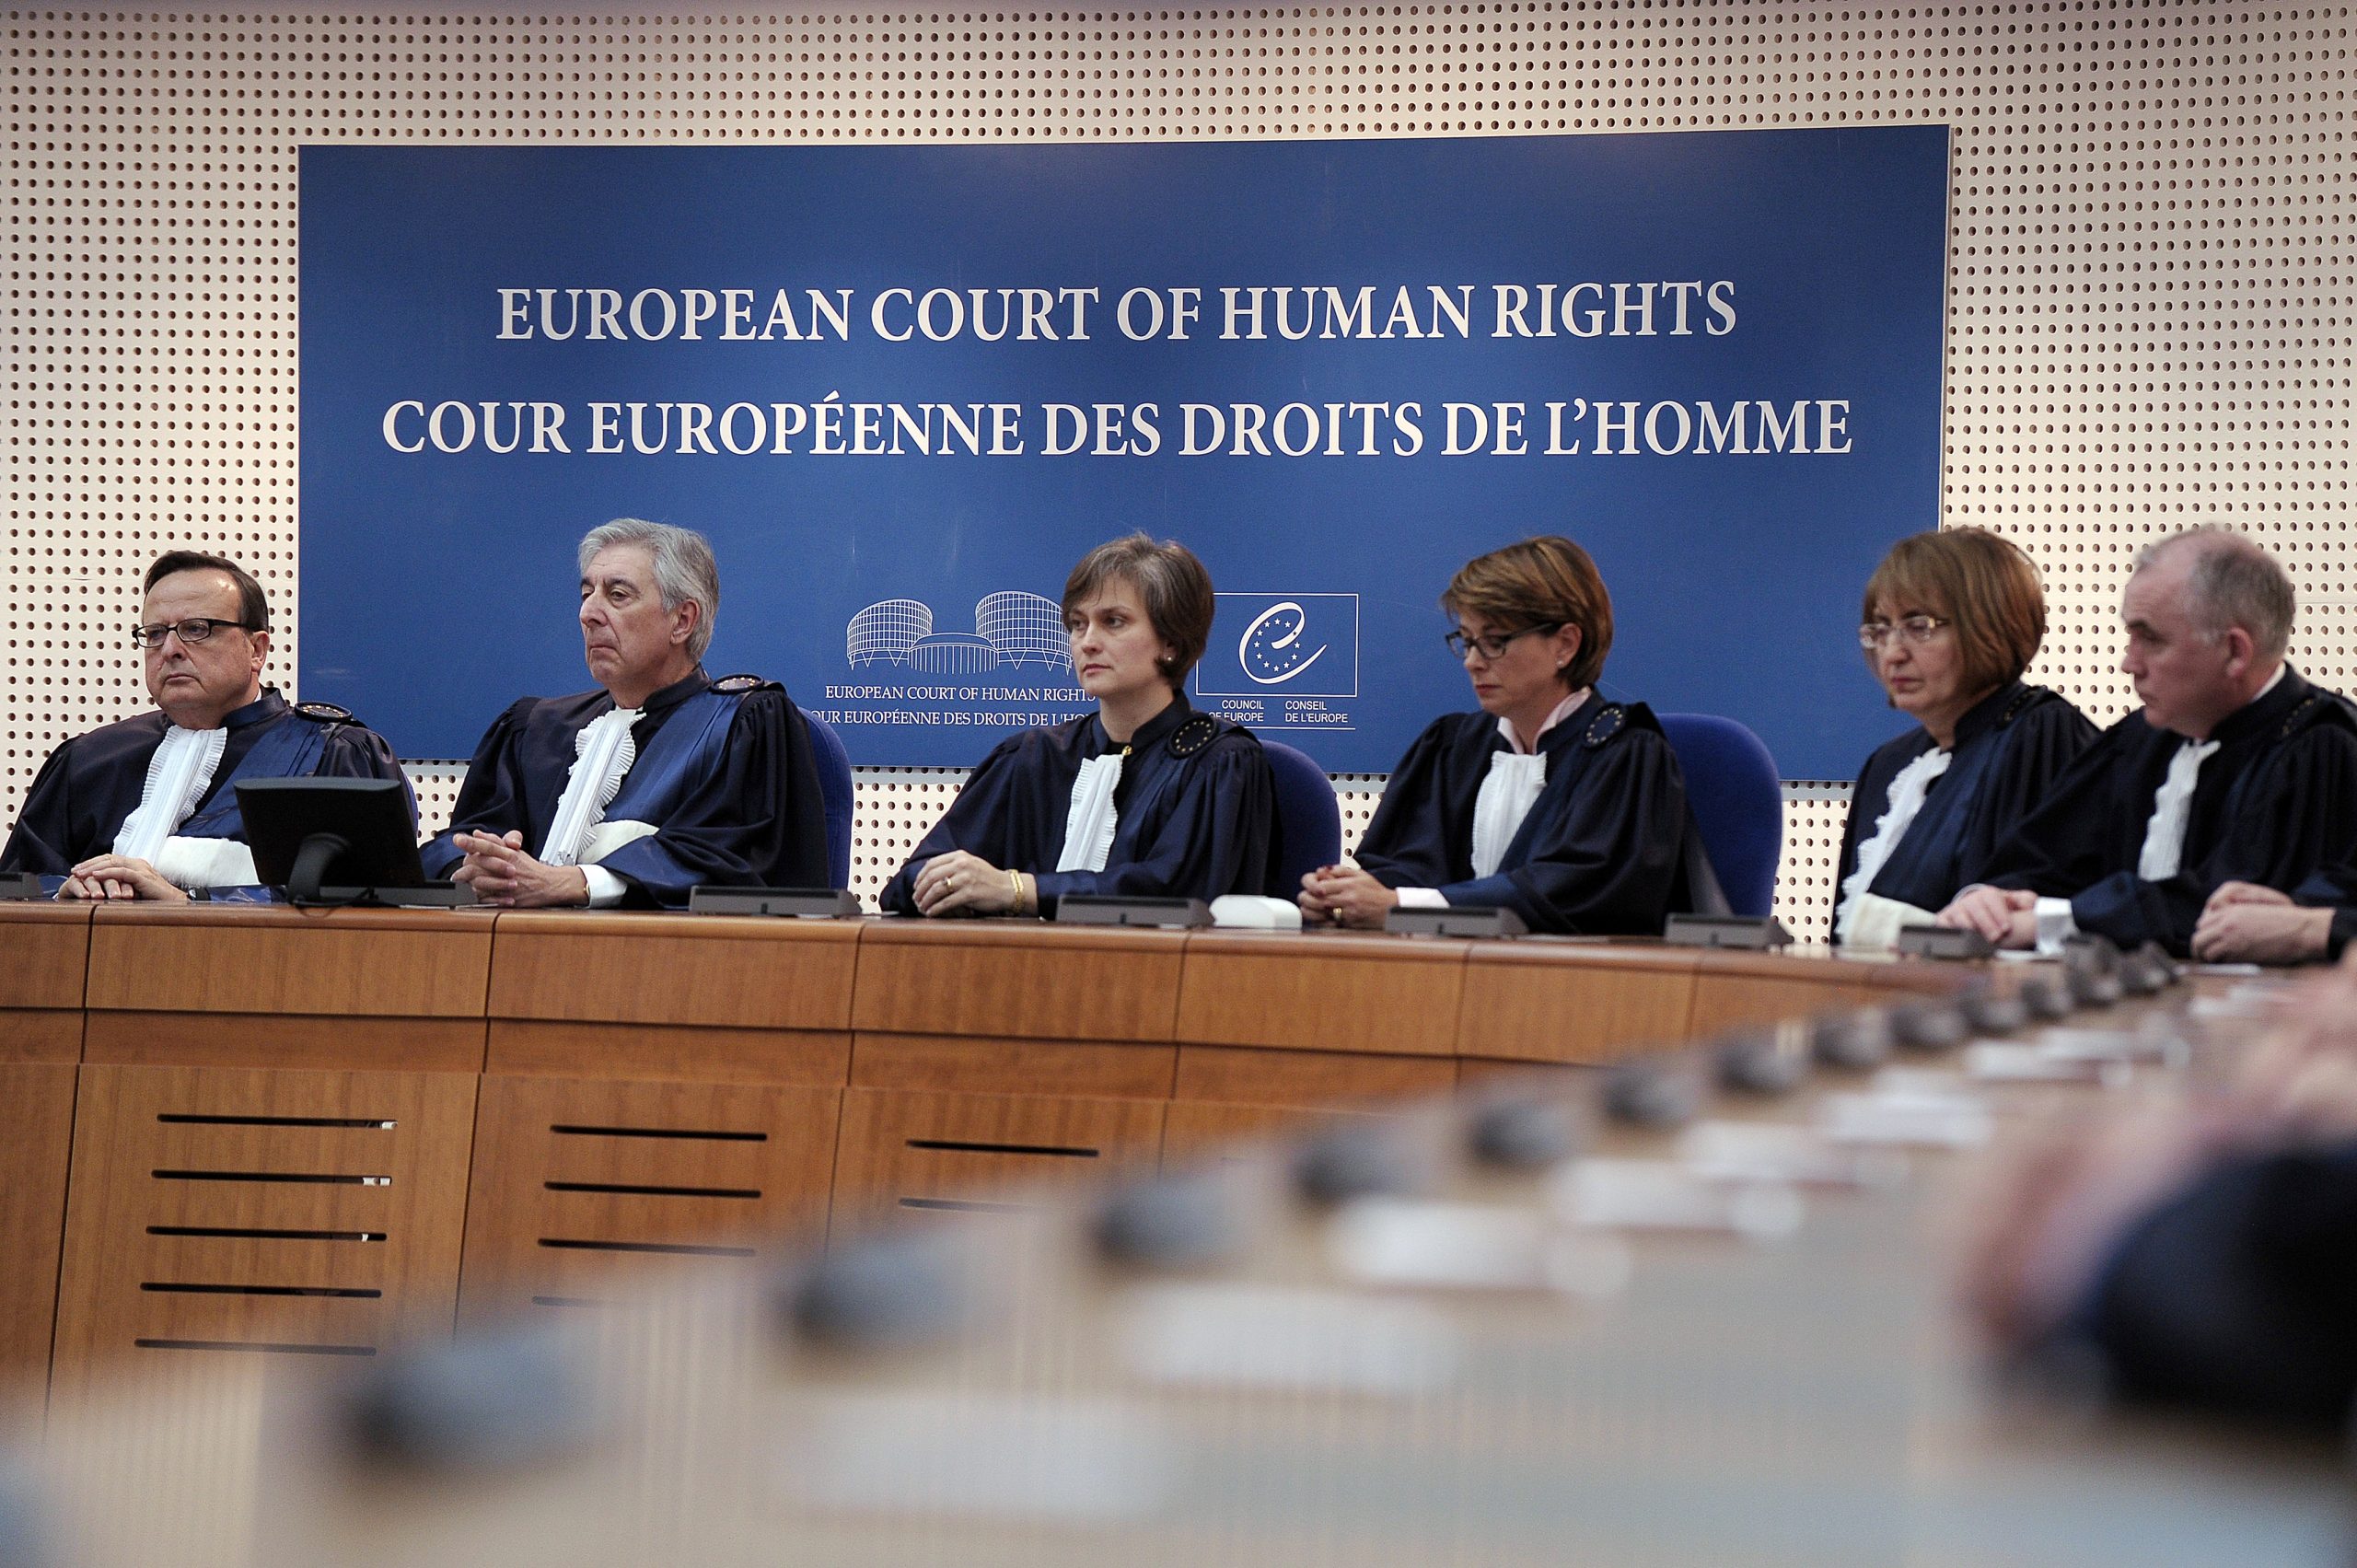 Россия против еспч. Совет Европы и Европейский суд по правам человека. Заседание европейского суда по правам человека. Европейский суд по правам человека в Страсбурге. Европейская комиссия по правам человека.